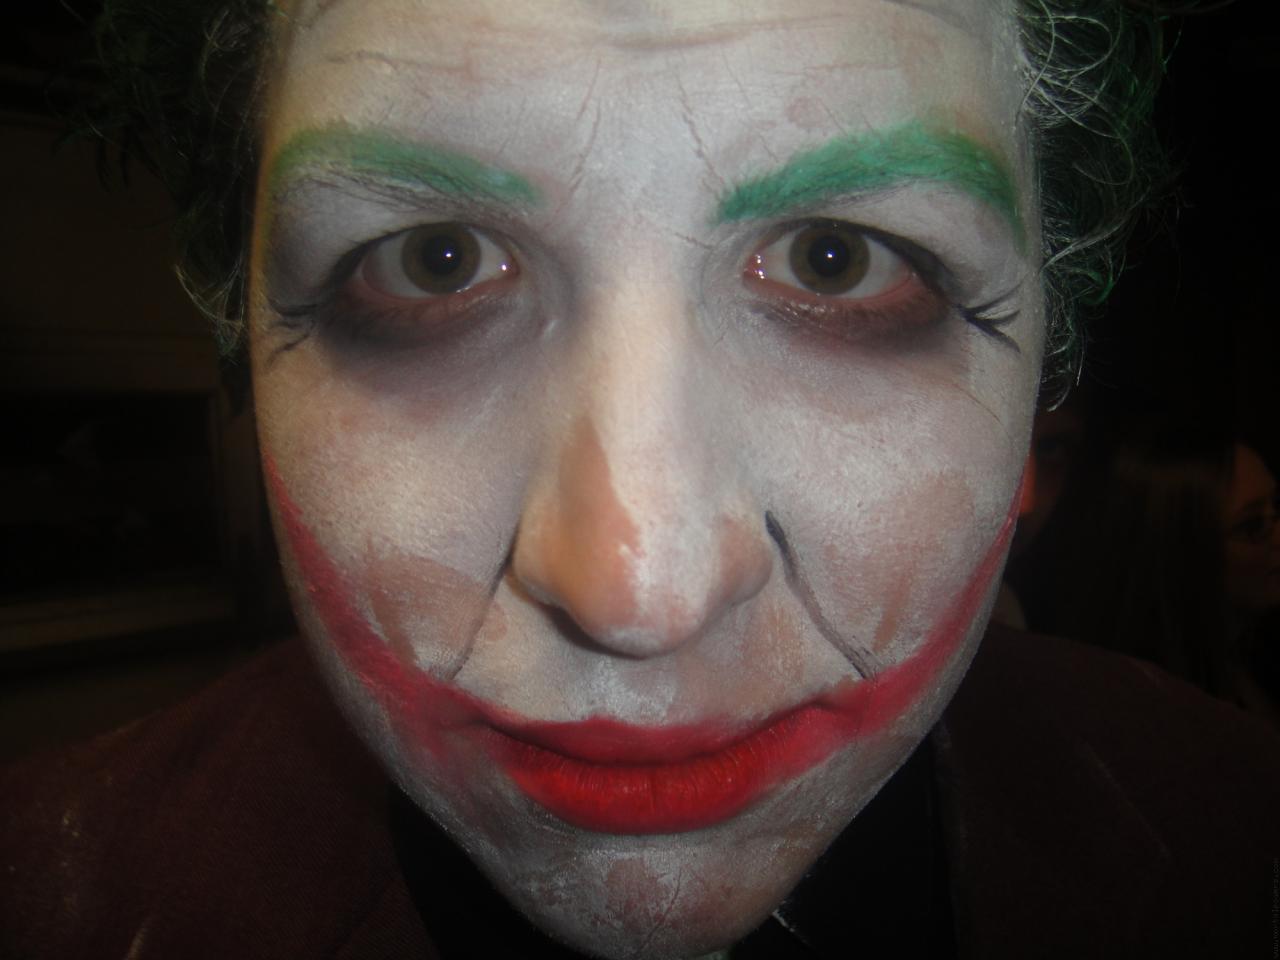 Nick as Batman's The Joker